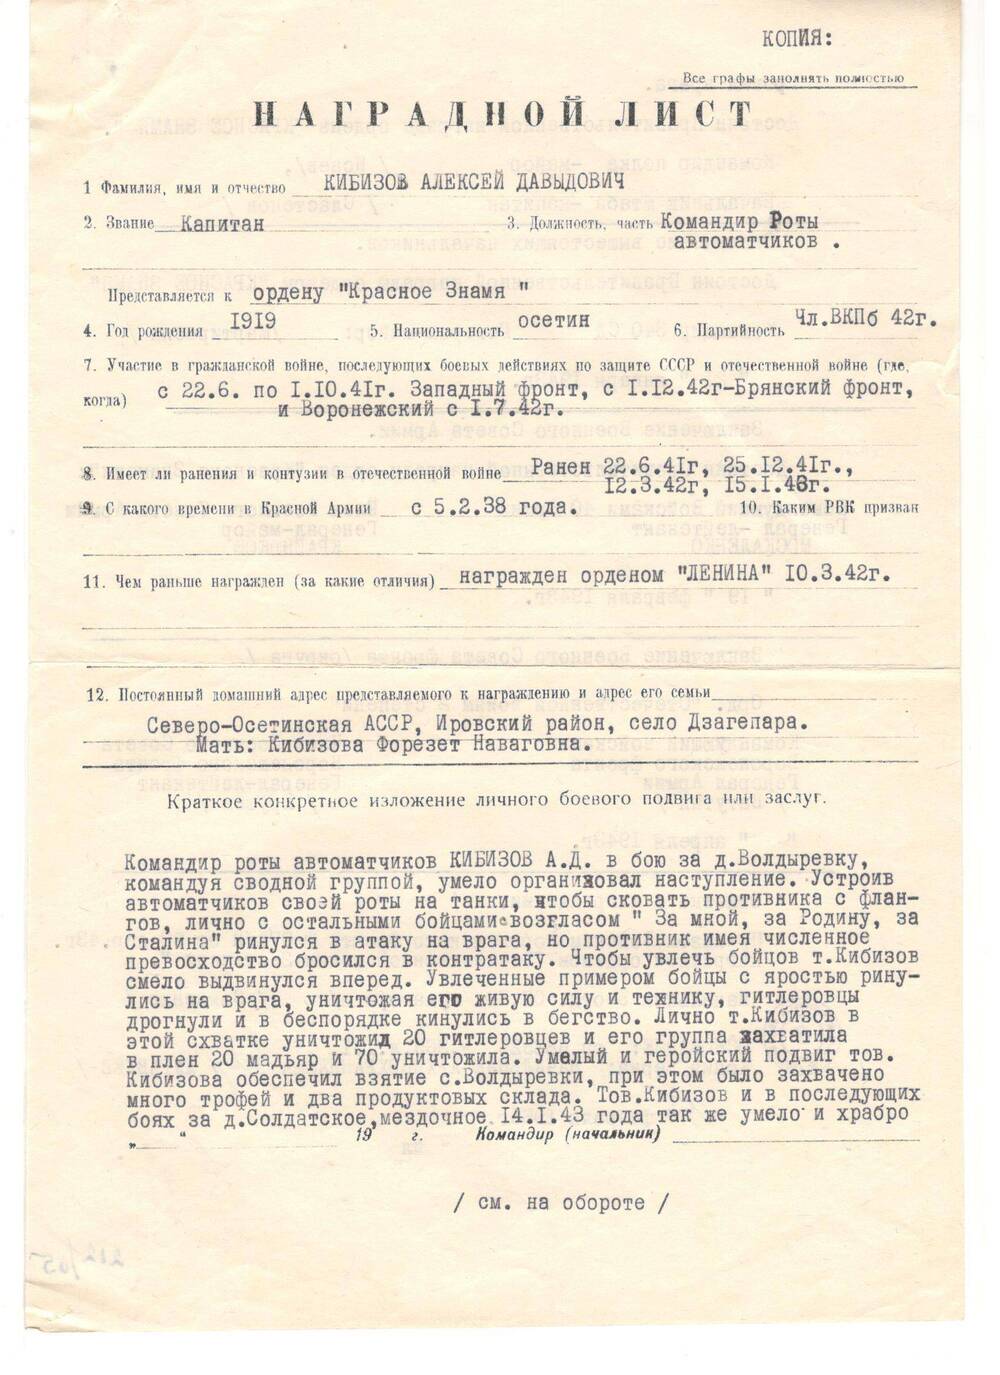 Наградной лист (копия)
капитана А.Д. Кибизова
для представления к ордену Красного Знамени